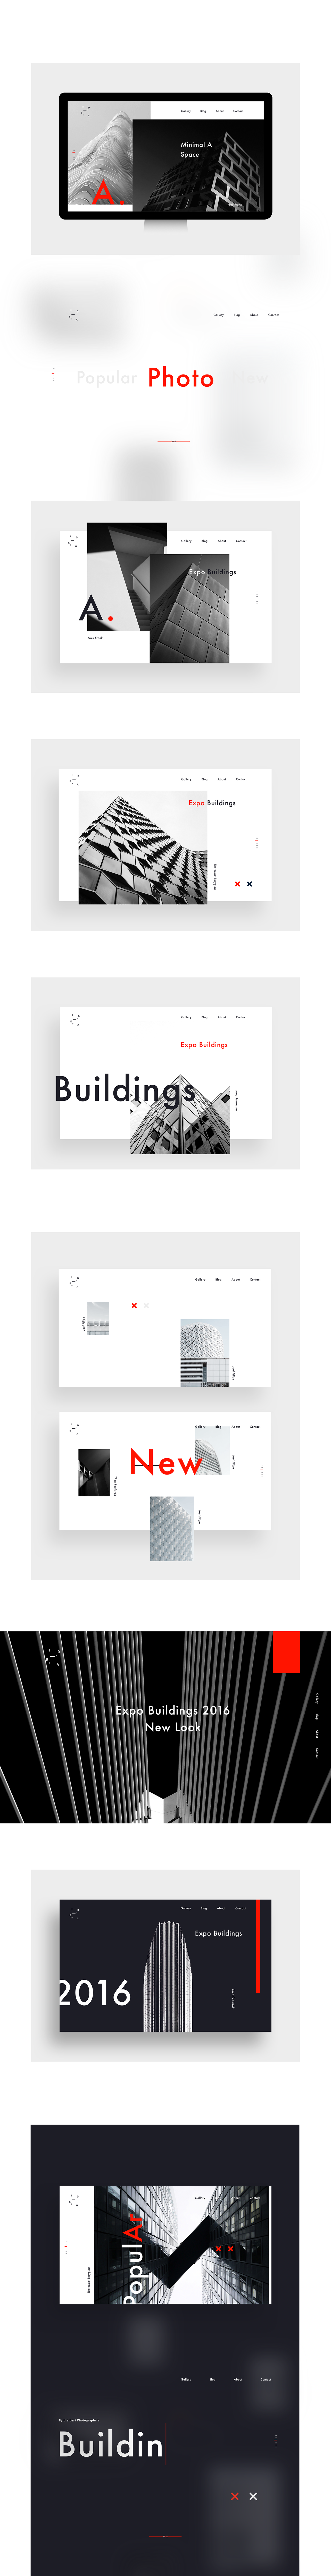 minimal Minimalism black$white Web UI UI/UX case photographers architects